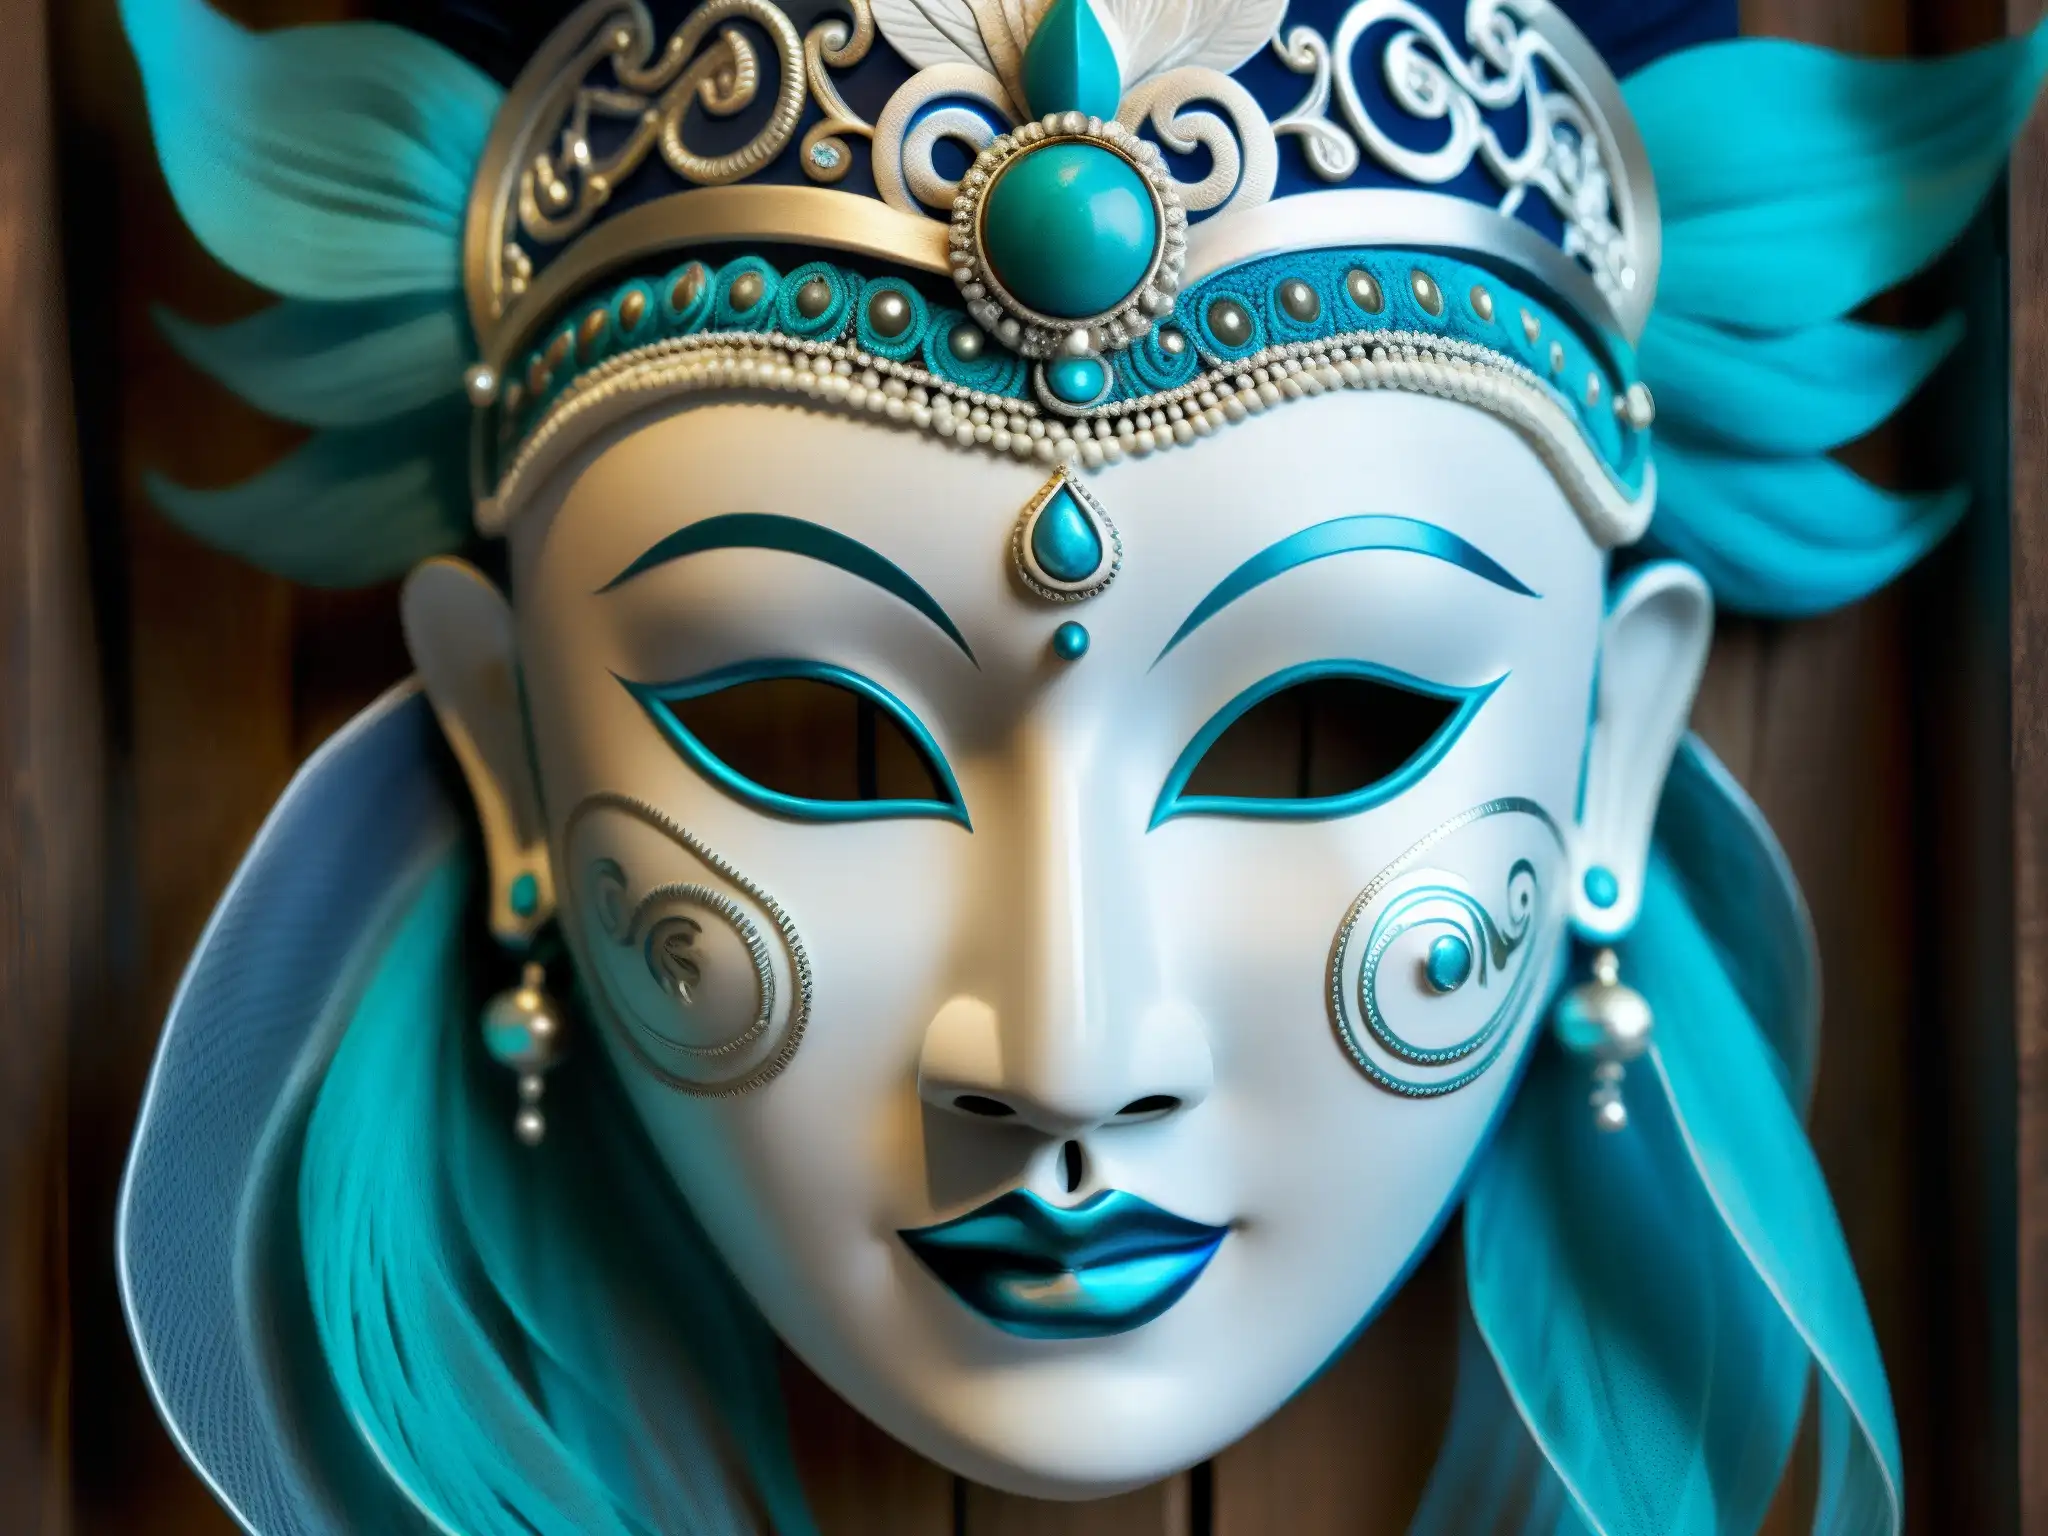 Una máscara nepalesa de la Dama de Blanco, con detalles intrincados y colores fantasmales, representa la elegancia y misterio del mito nepalés